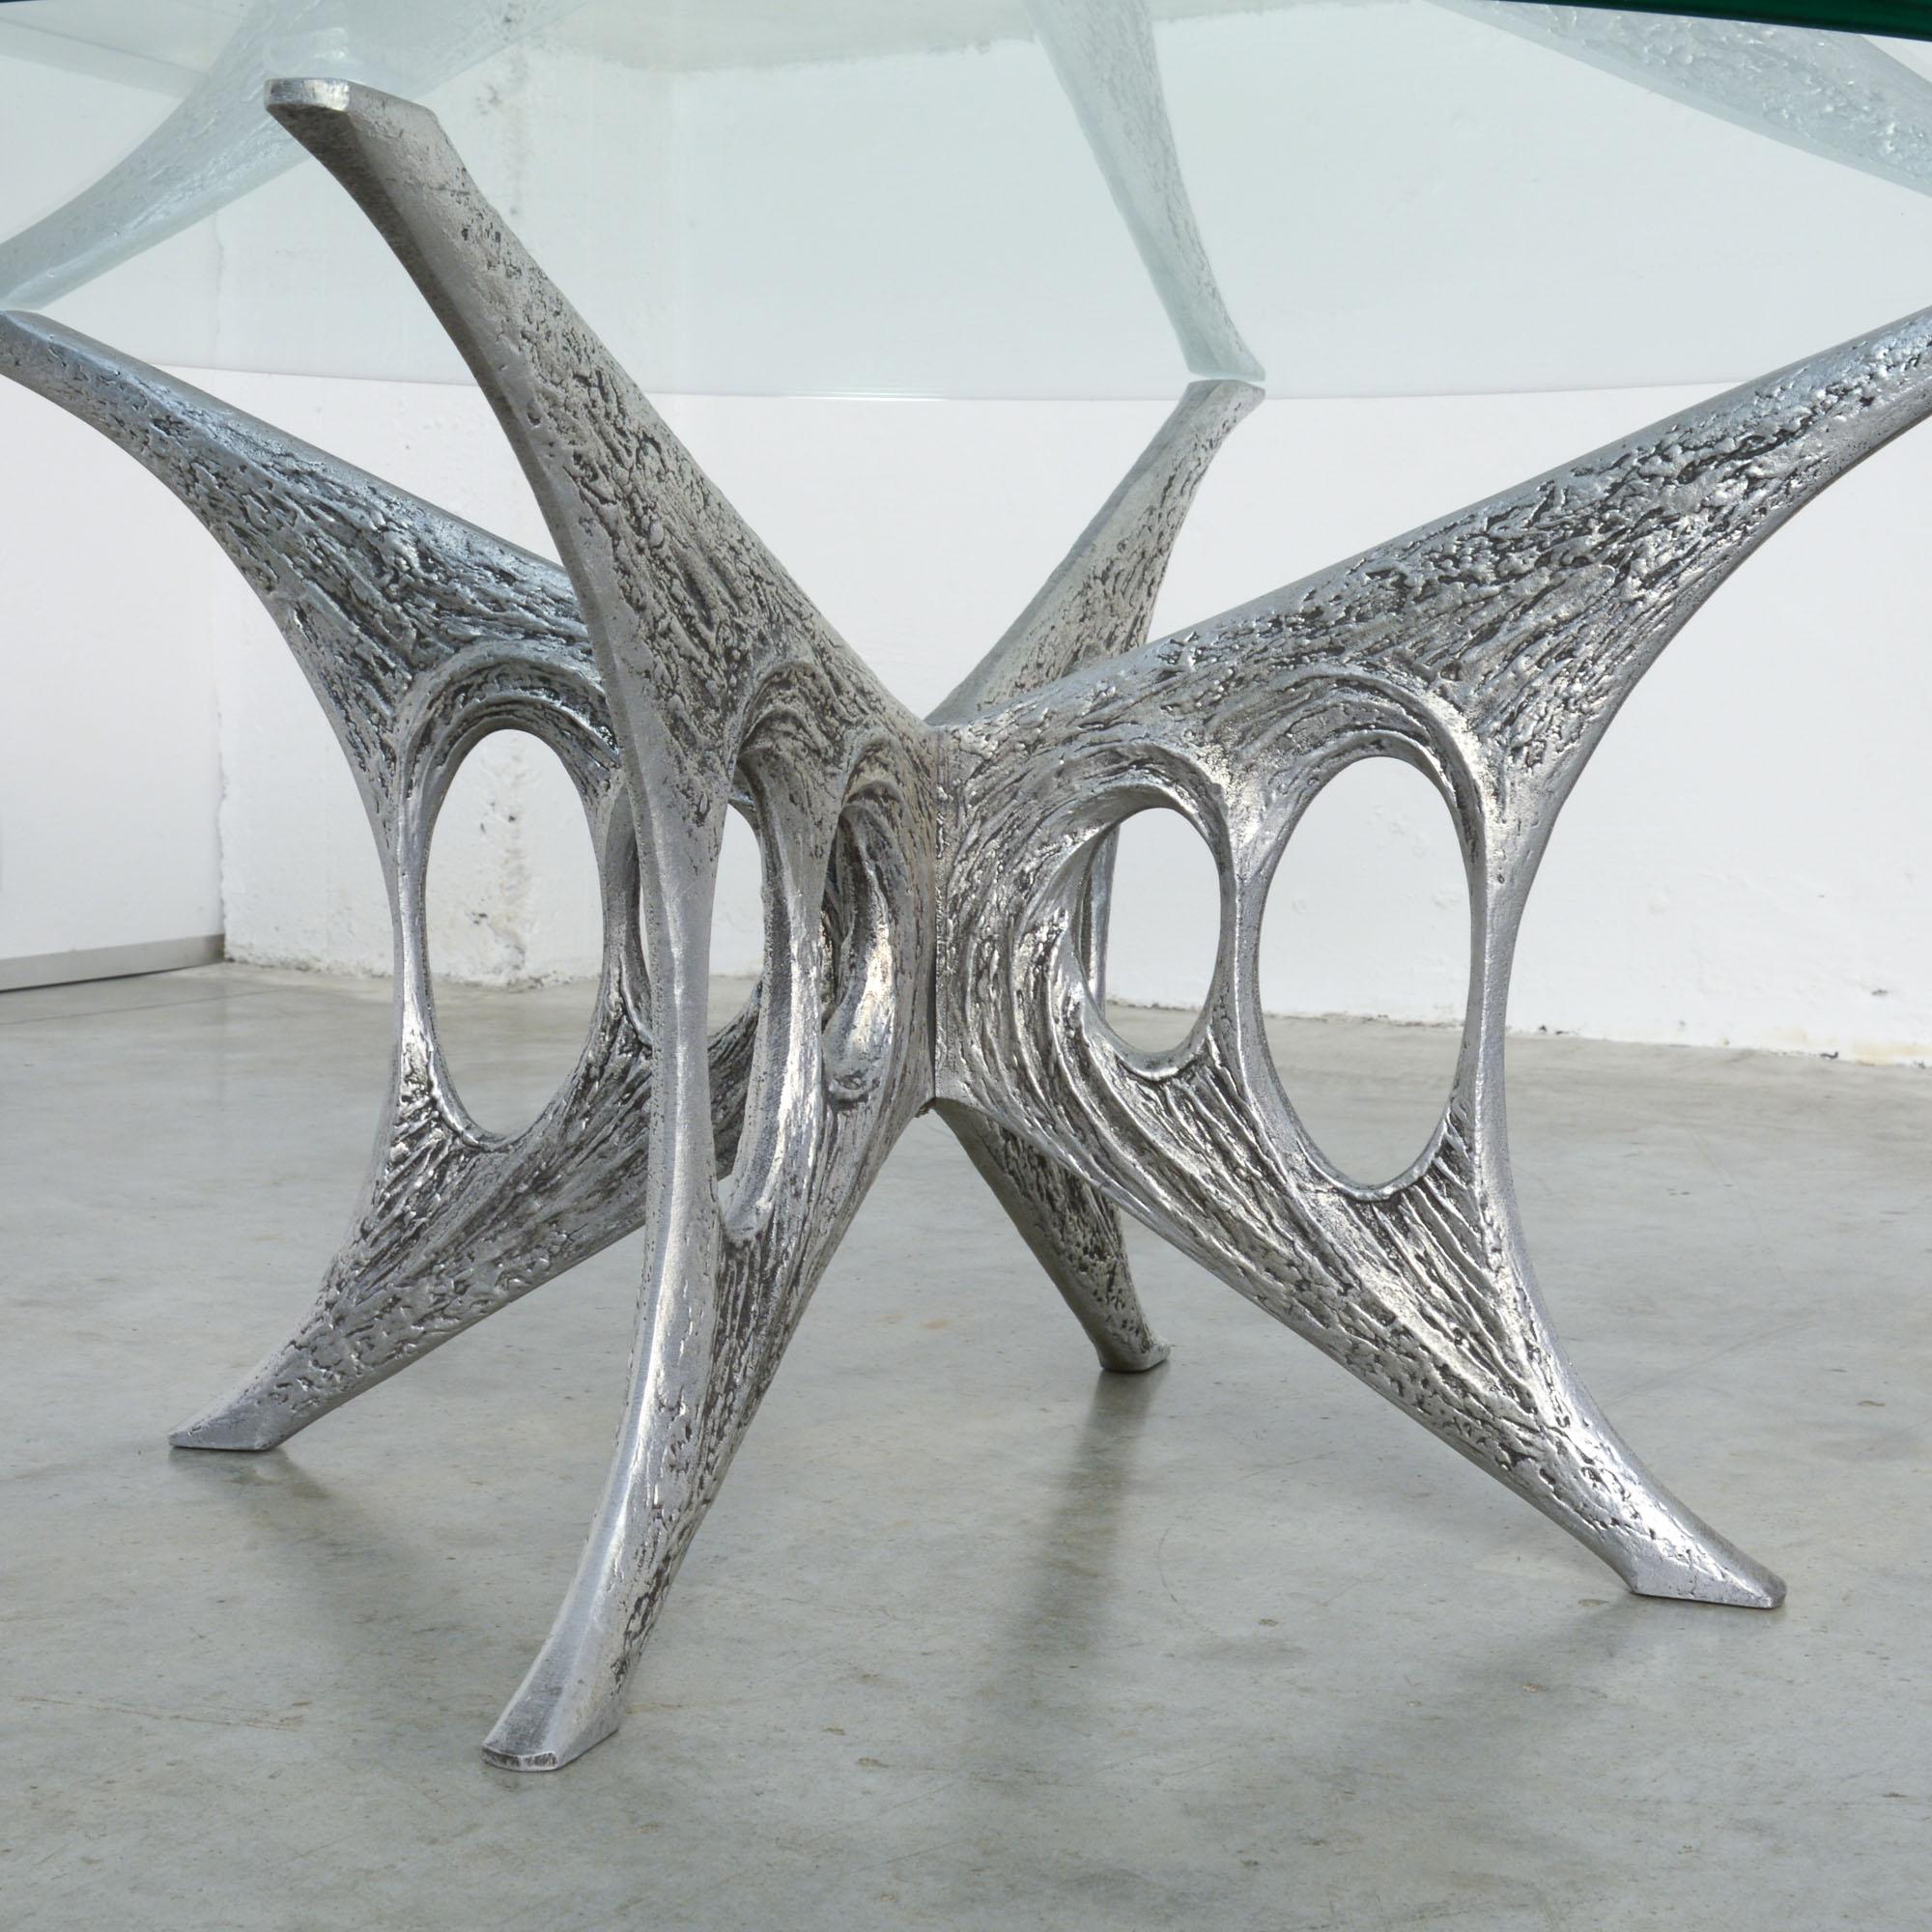 Cette table basse en aluminium est un bel exemple du travail brutaliste de l'artiste belge Willy Ceysens.
C'est une pièce unique, le numéro 17.
La base est fabriquée à la main à partir de 2 pièces de fonte d'aluminium. La table et son plateau en